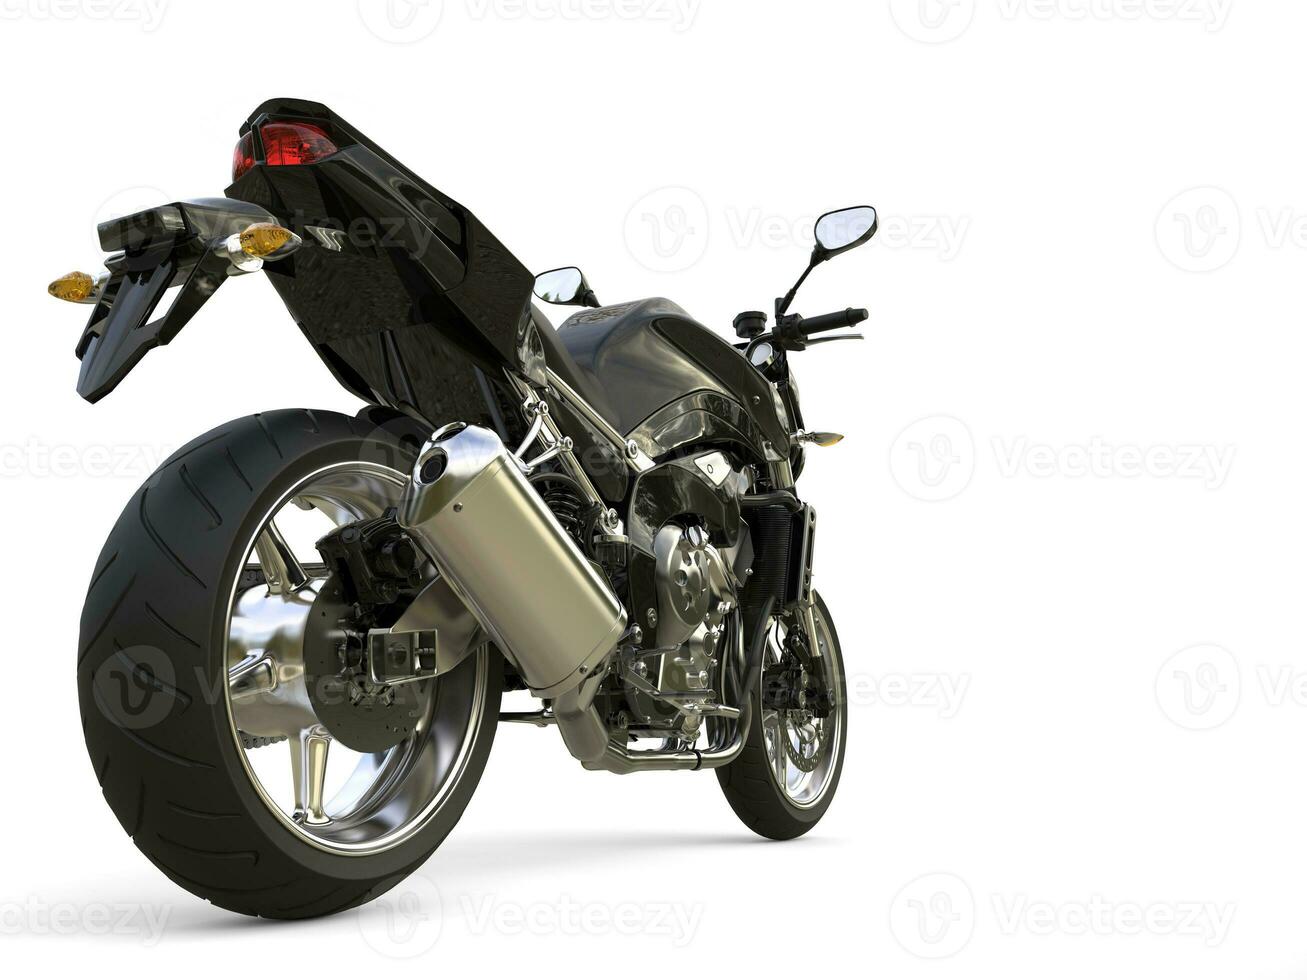 kasta svart modern sporter motorcykel - bak- hjul närbild skott foto